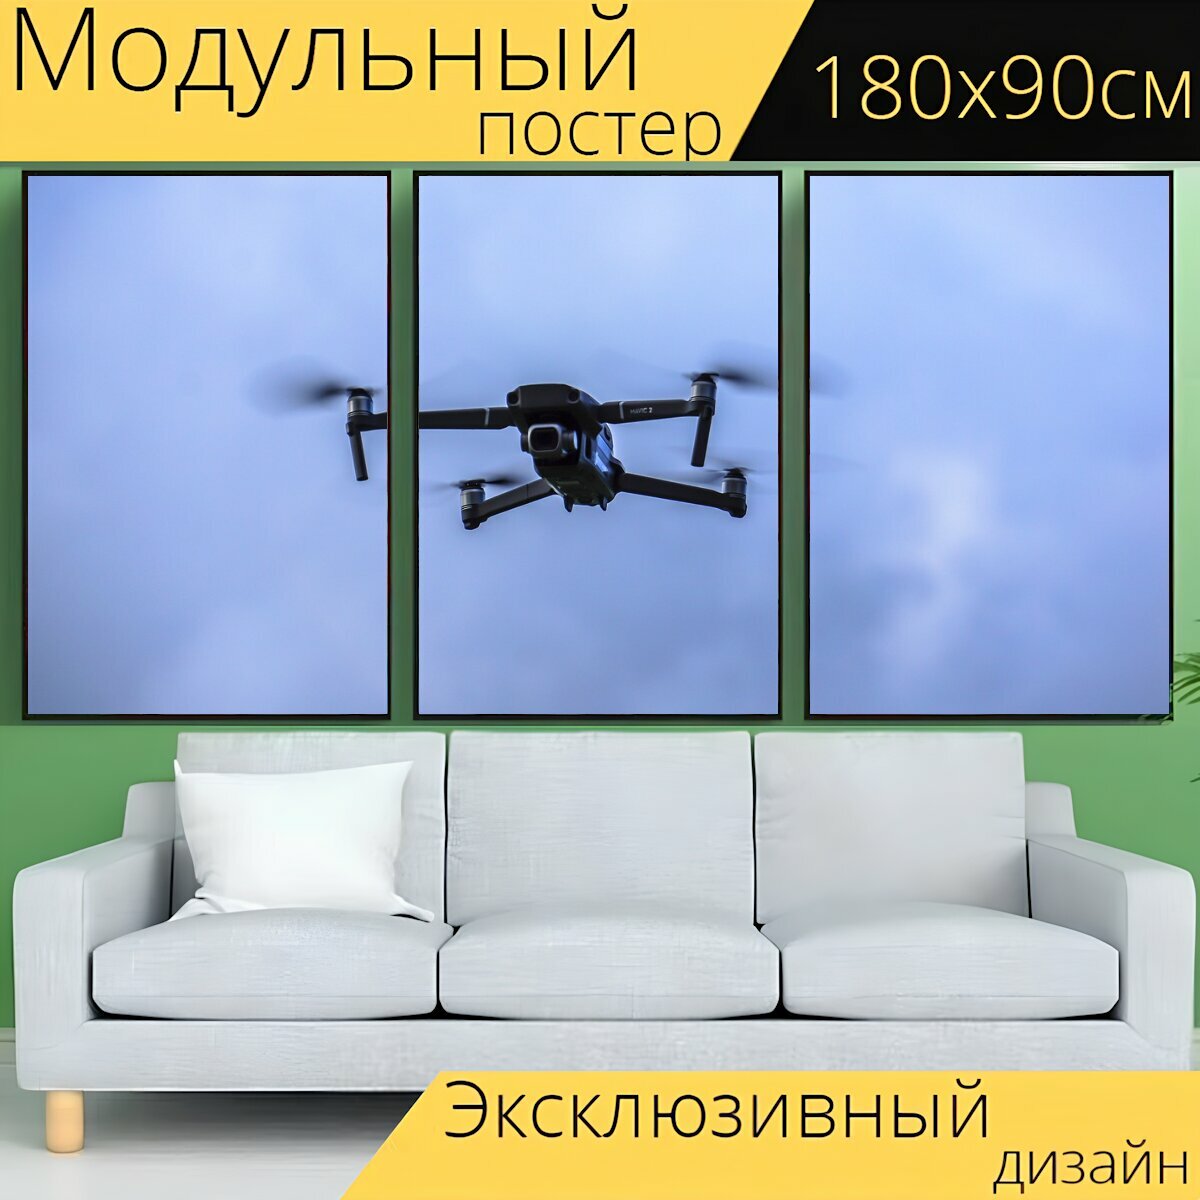 Модульный постер "Дрон, бпла, вертолет" 180 x 90 см. для интерьера